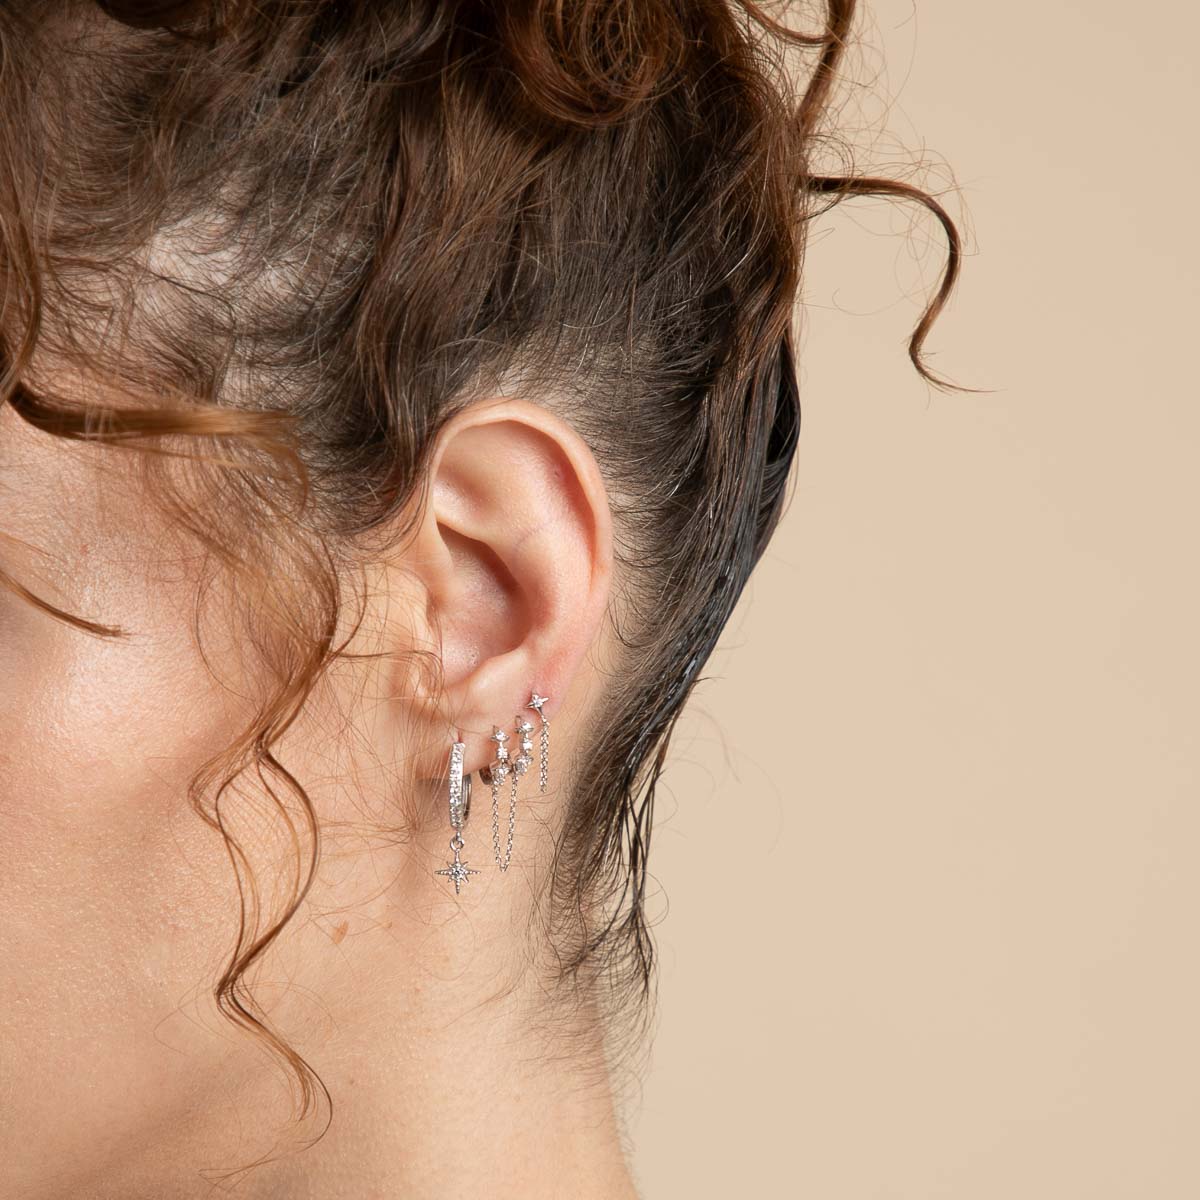 Cosmic Star Chain Stud Earrings in Silver